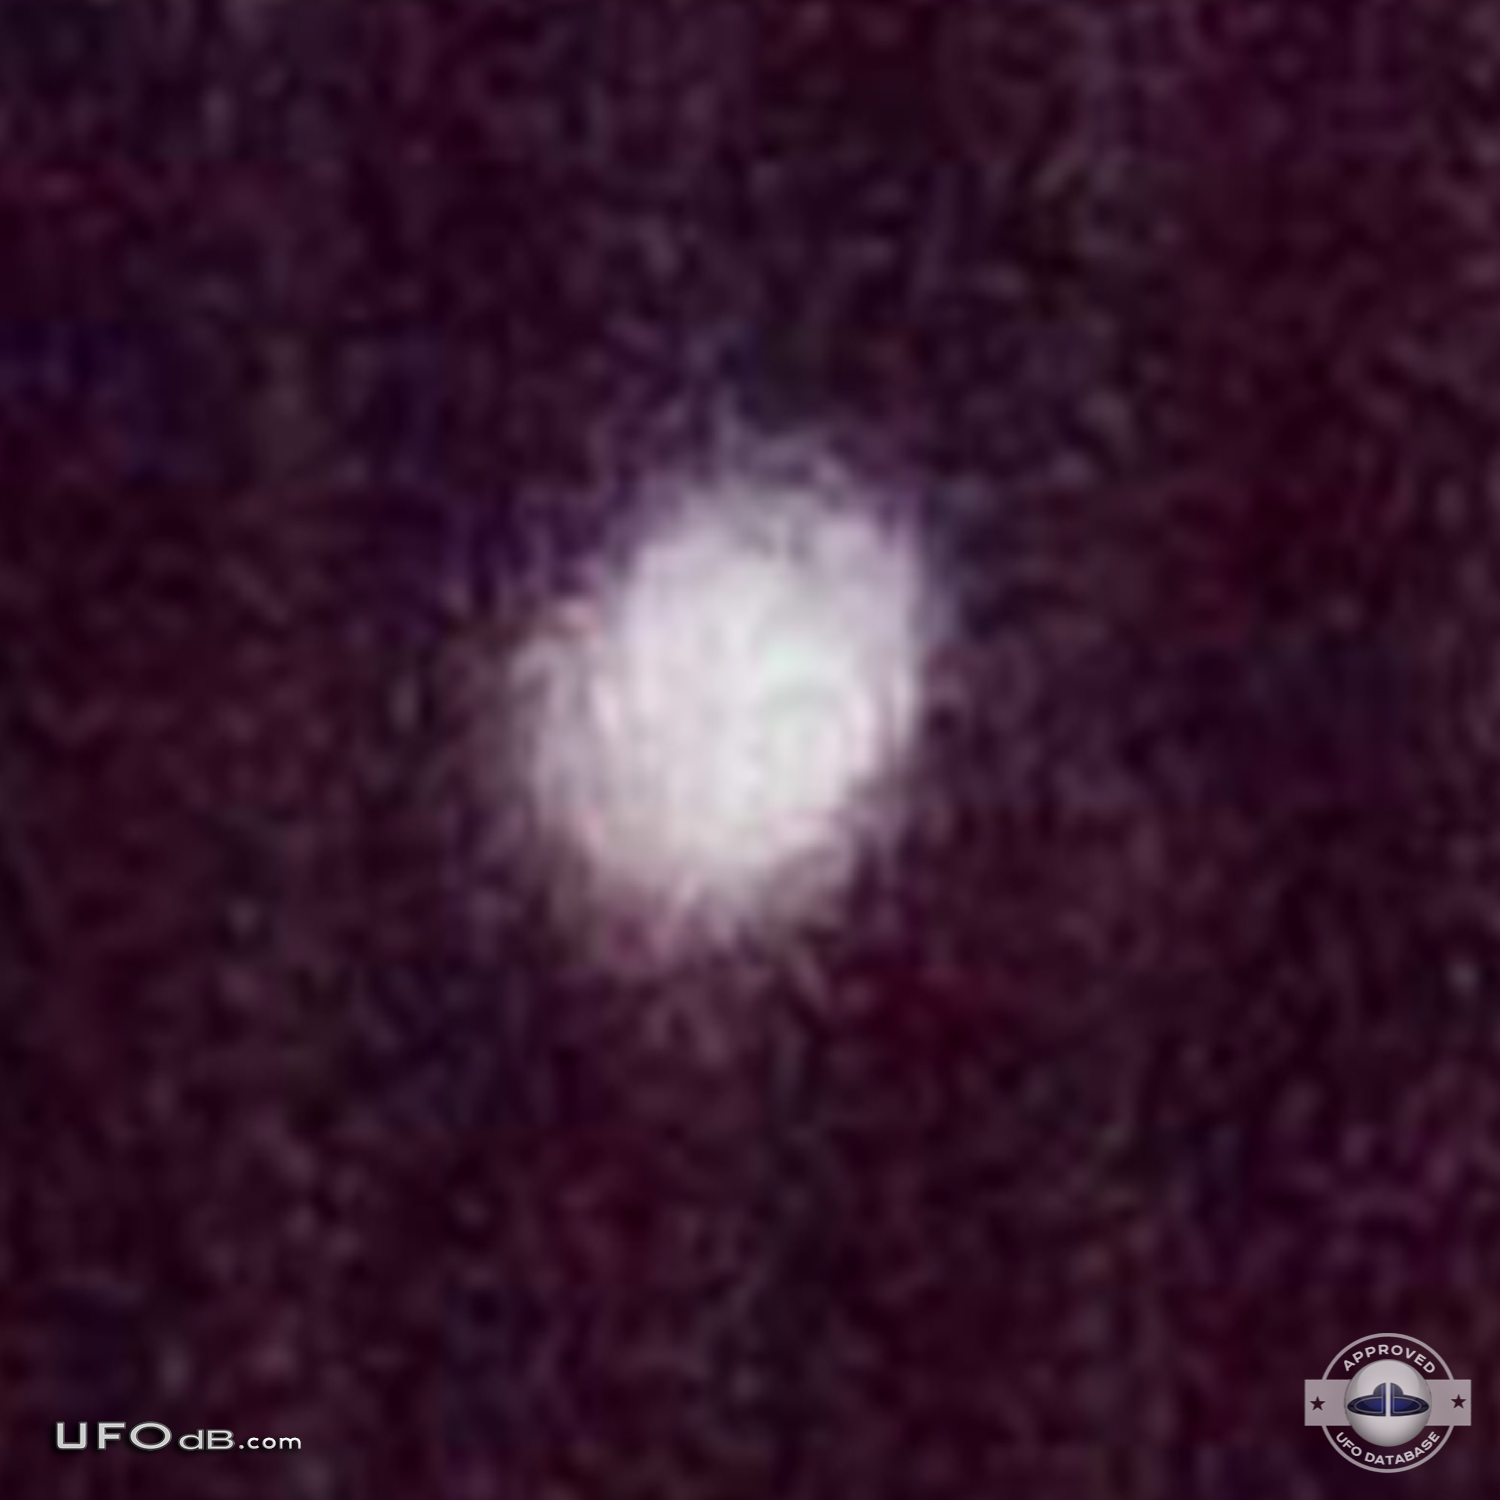 Picture of a Small white probe UFO caught in the backyard Bogota 2012 UFO Picture #400-4